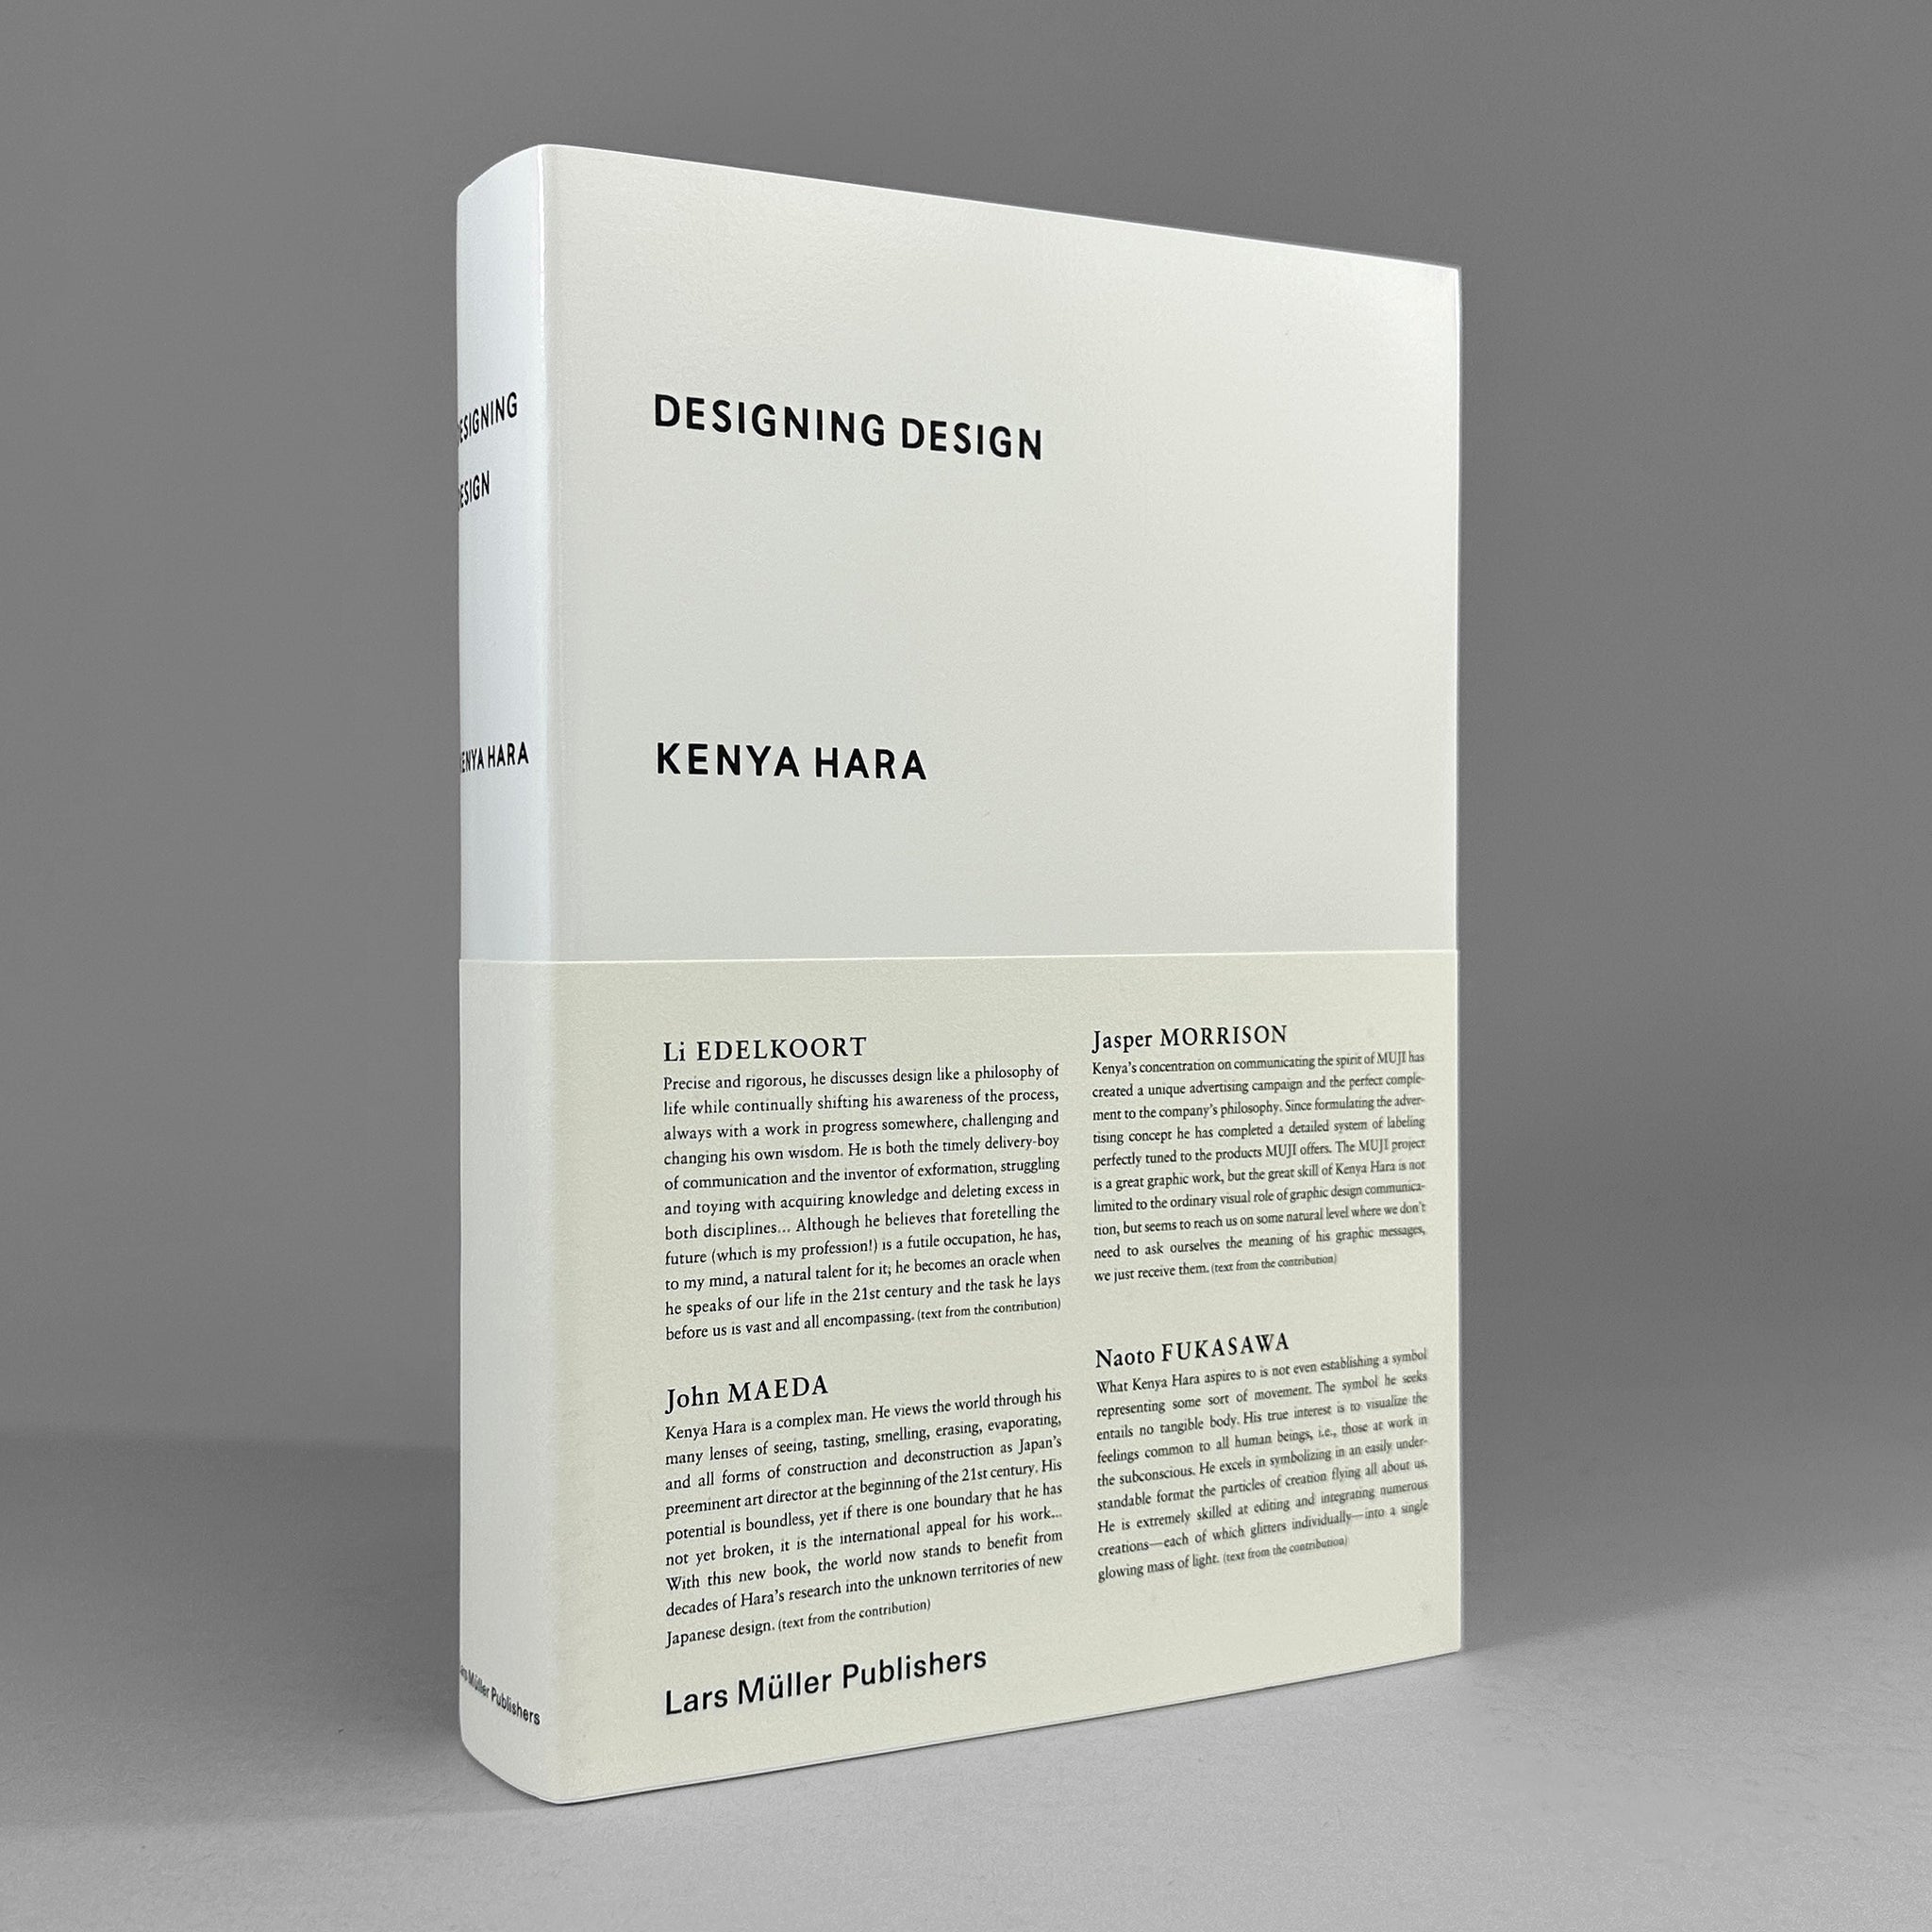 Designing Design: Kenya Hara